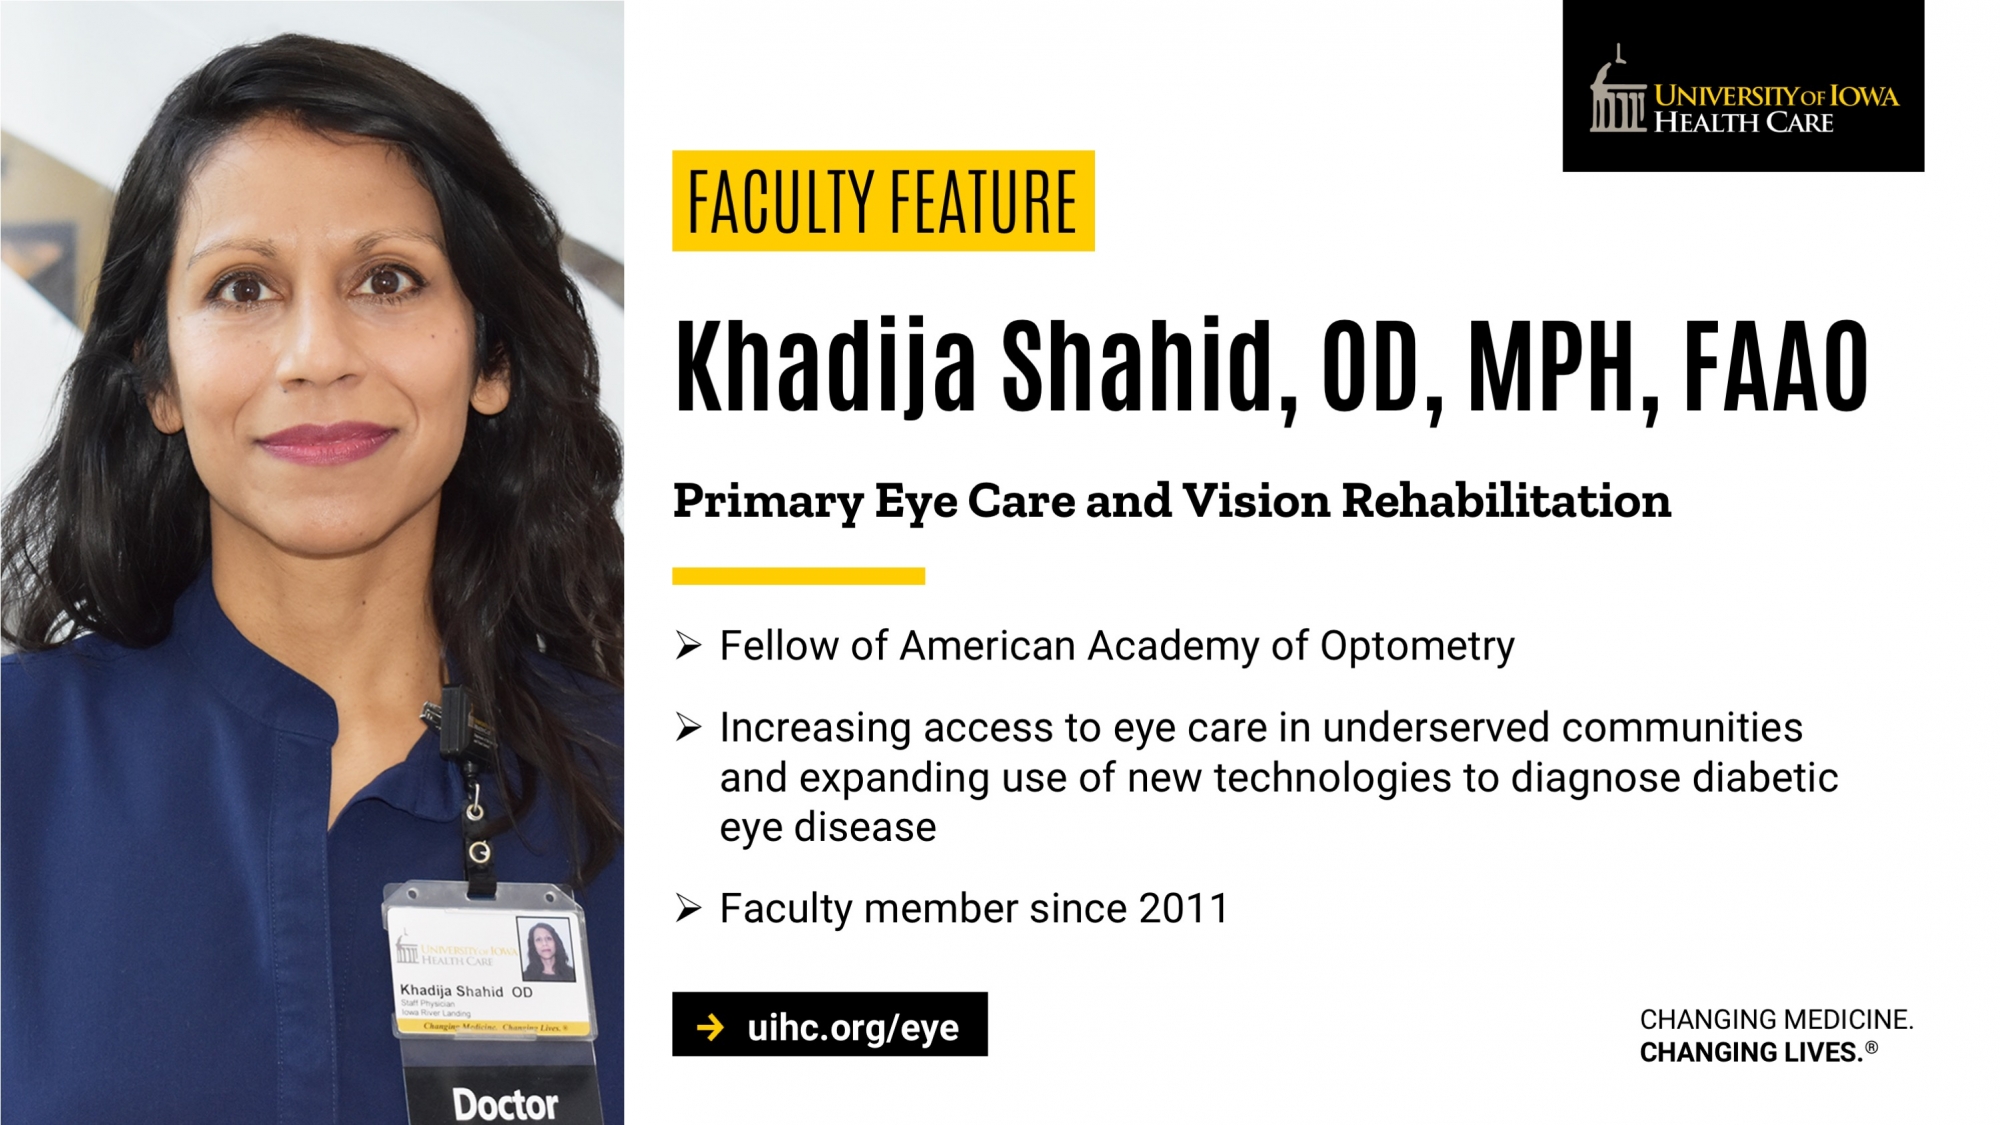 Faculty Feature: Khadija Shahid, OD, MPH, FAAO